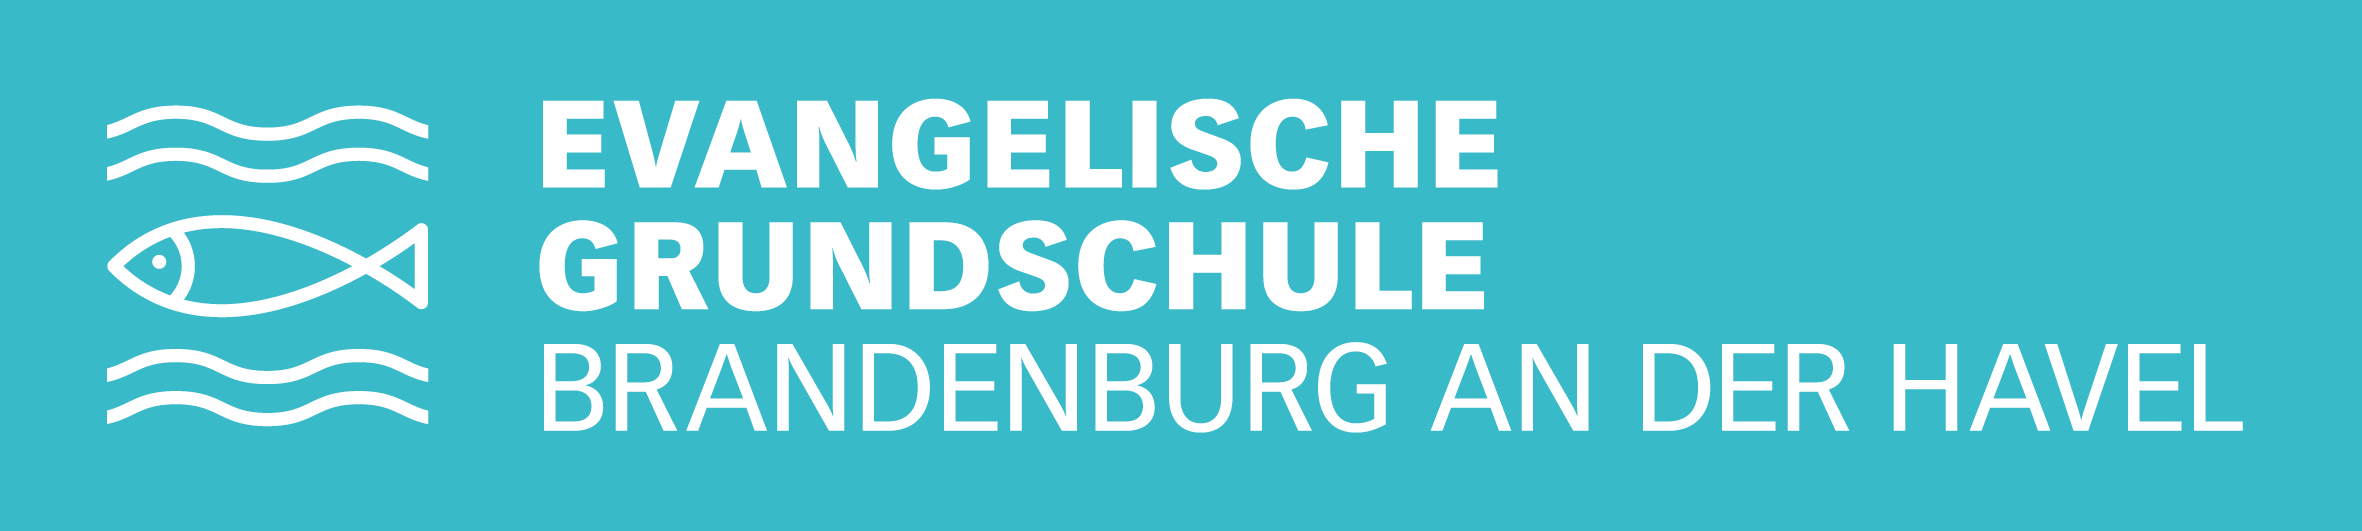 Evangelische Grundschule Brandenburg